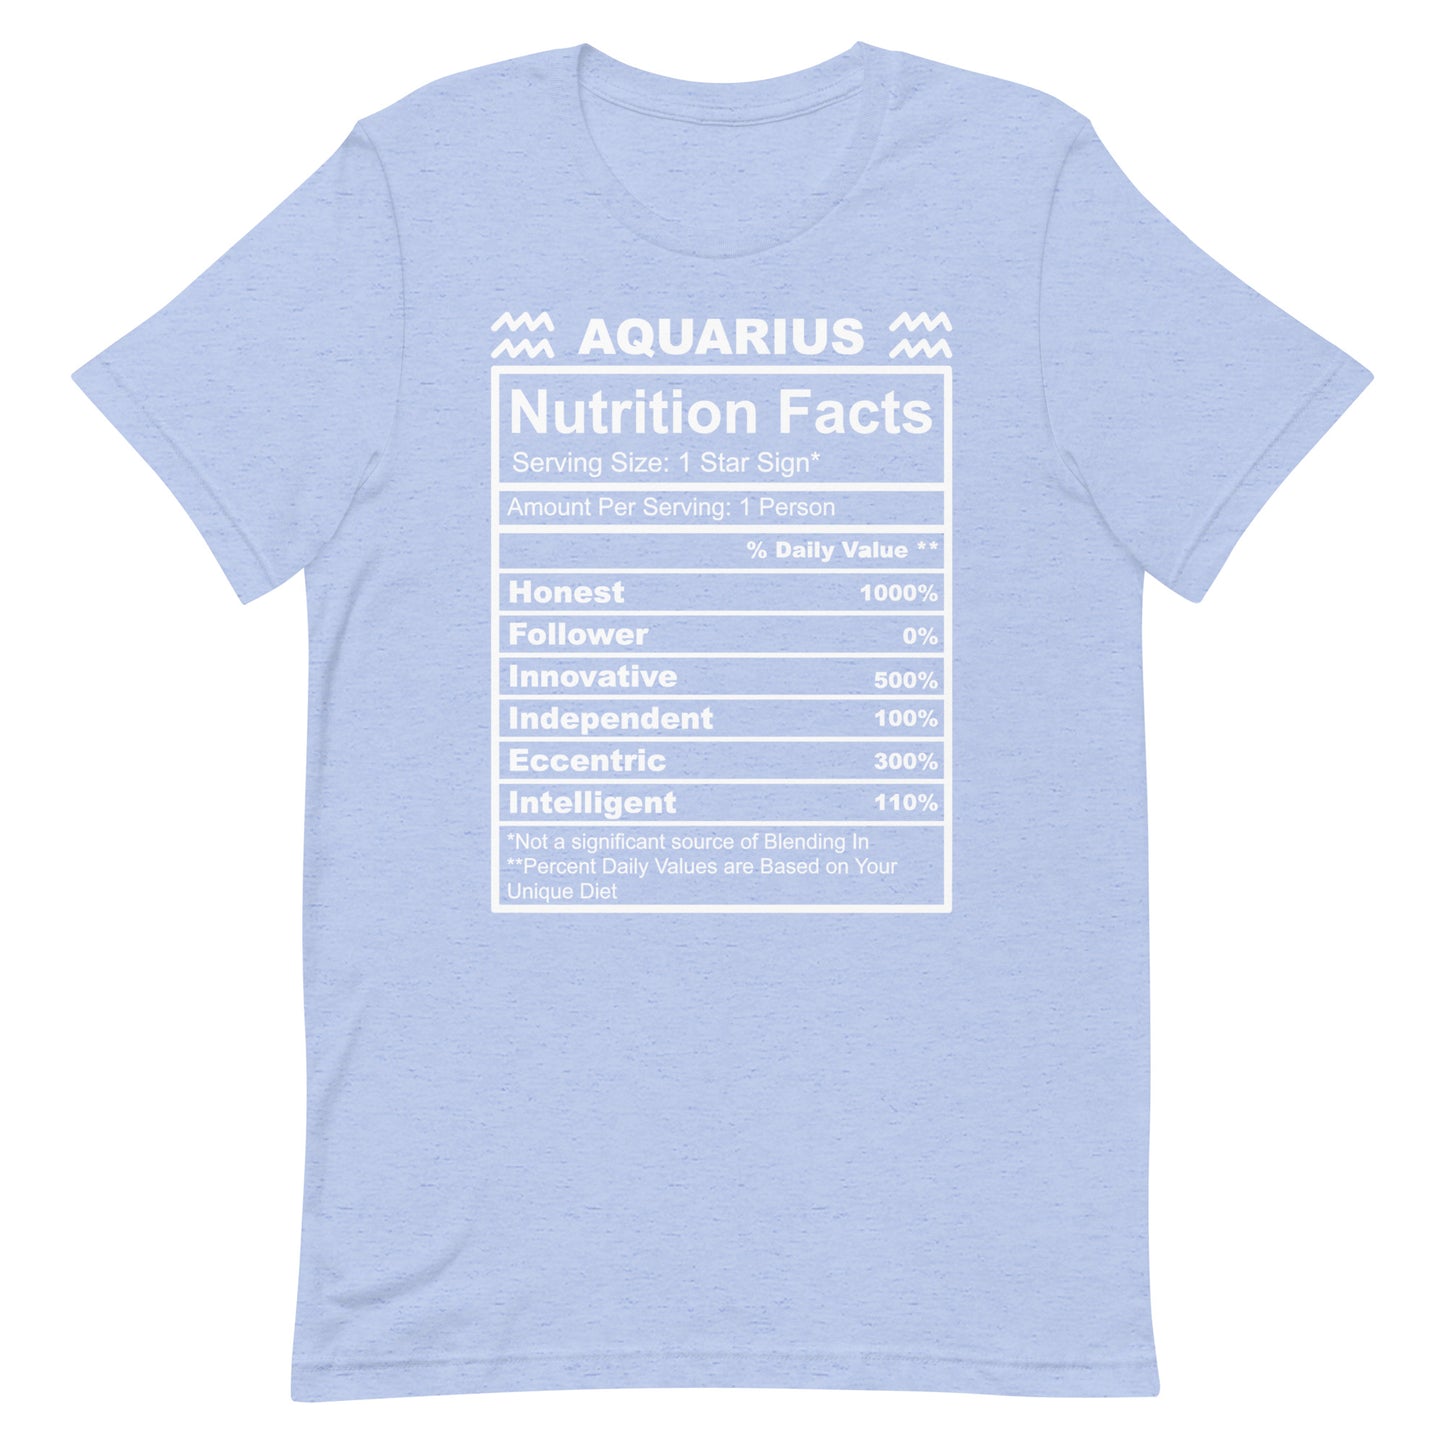 AQUARIUS - L-XL - Unisex T-Shirt (white letters)